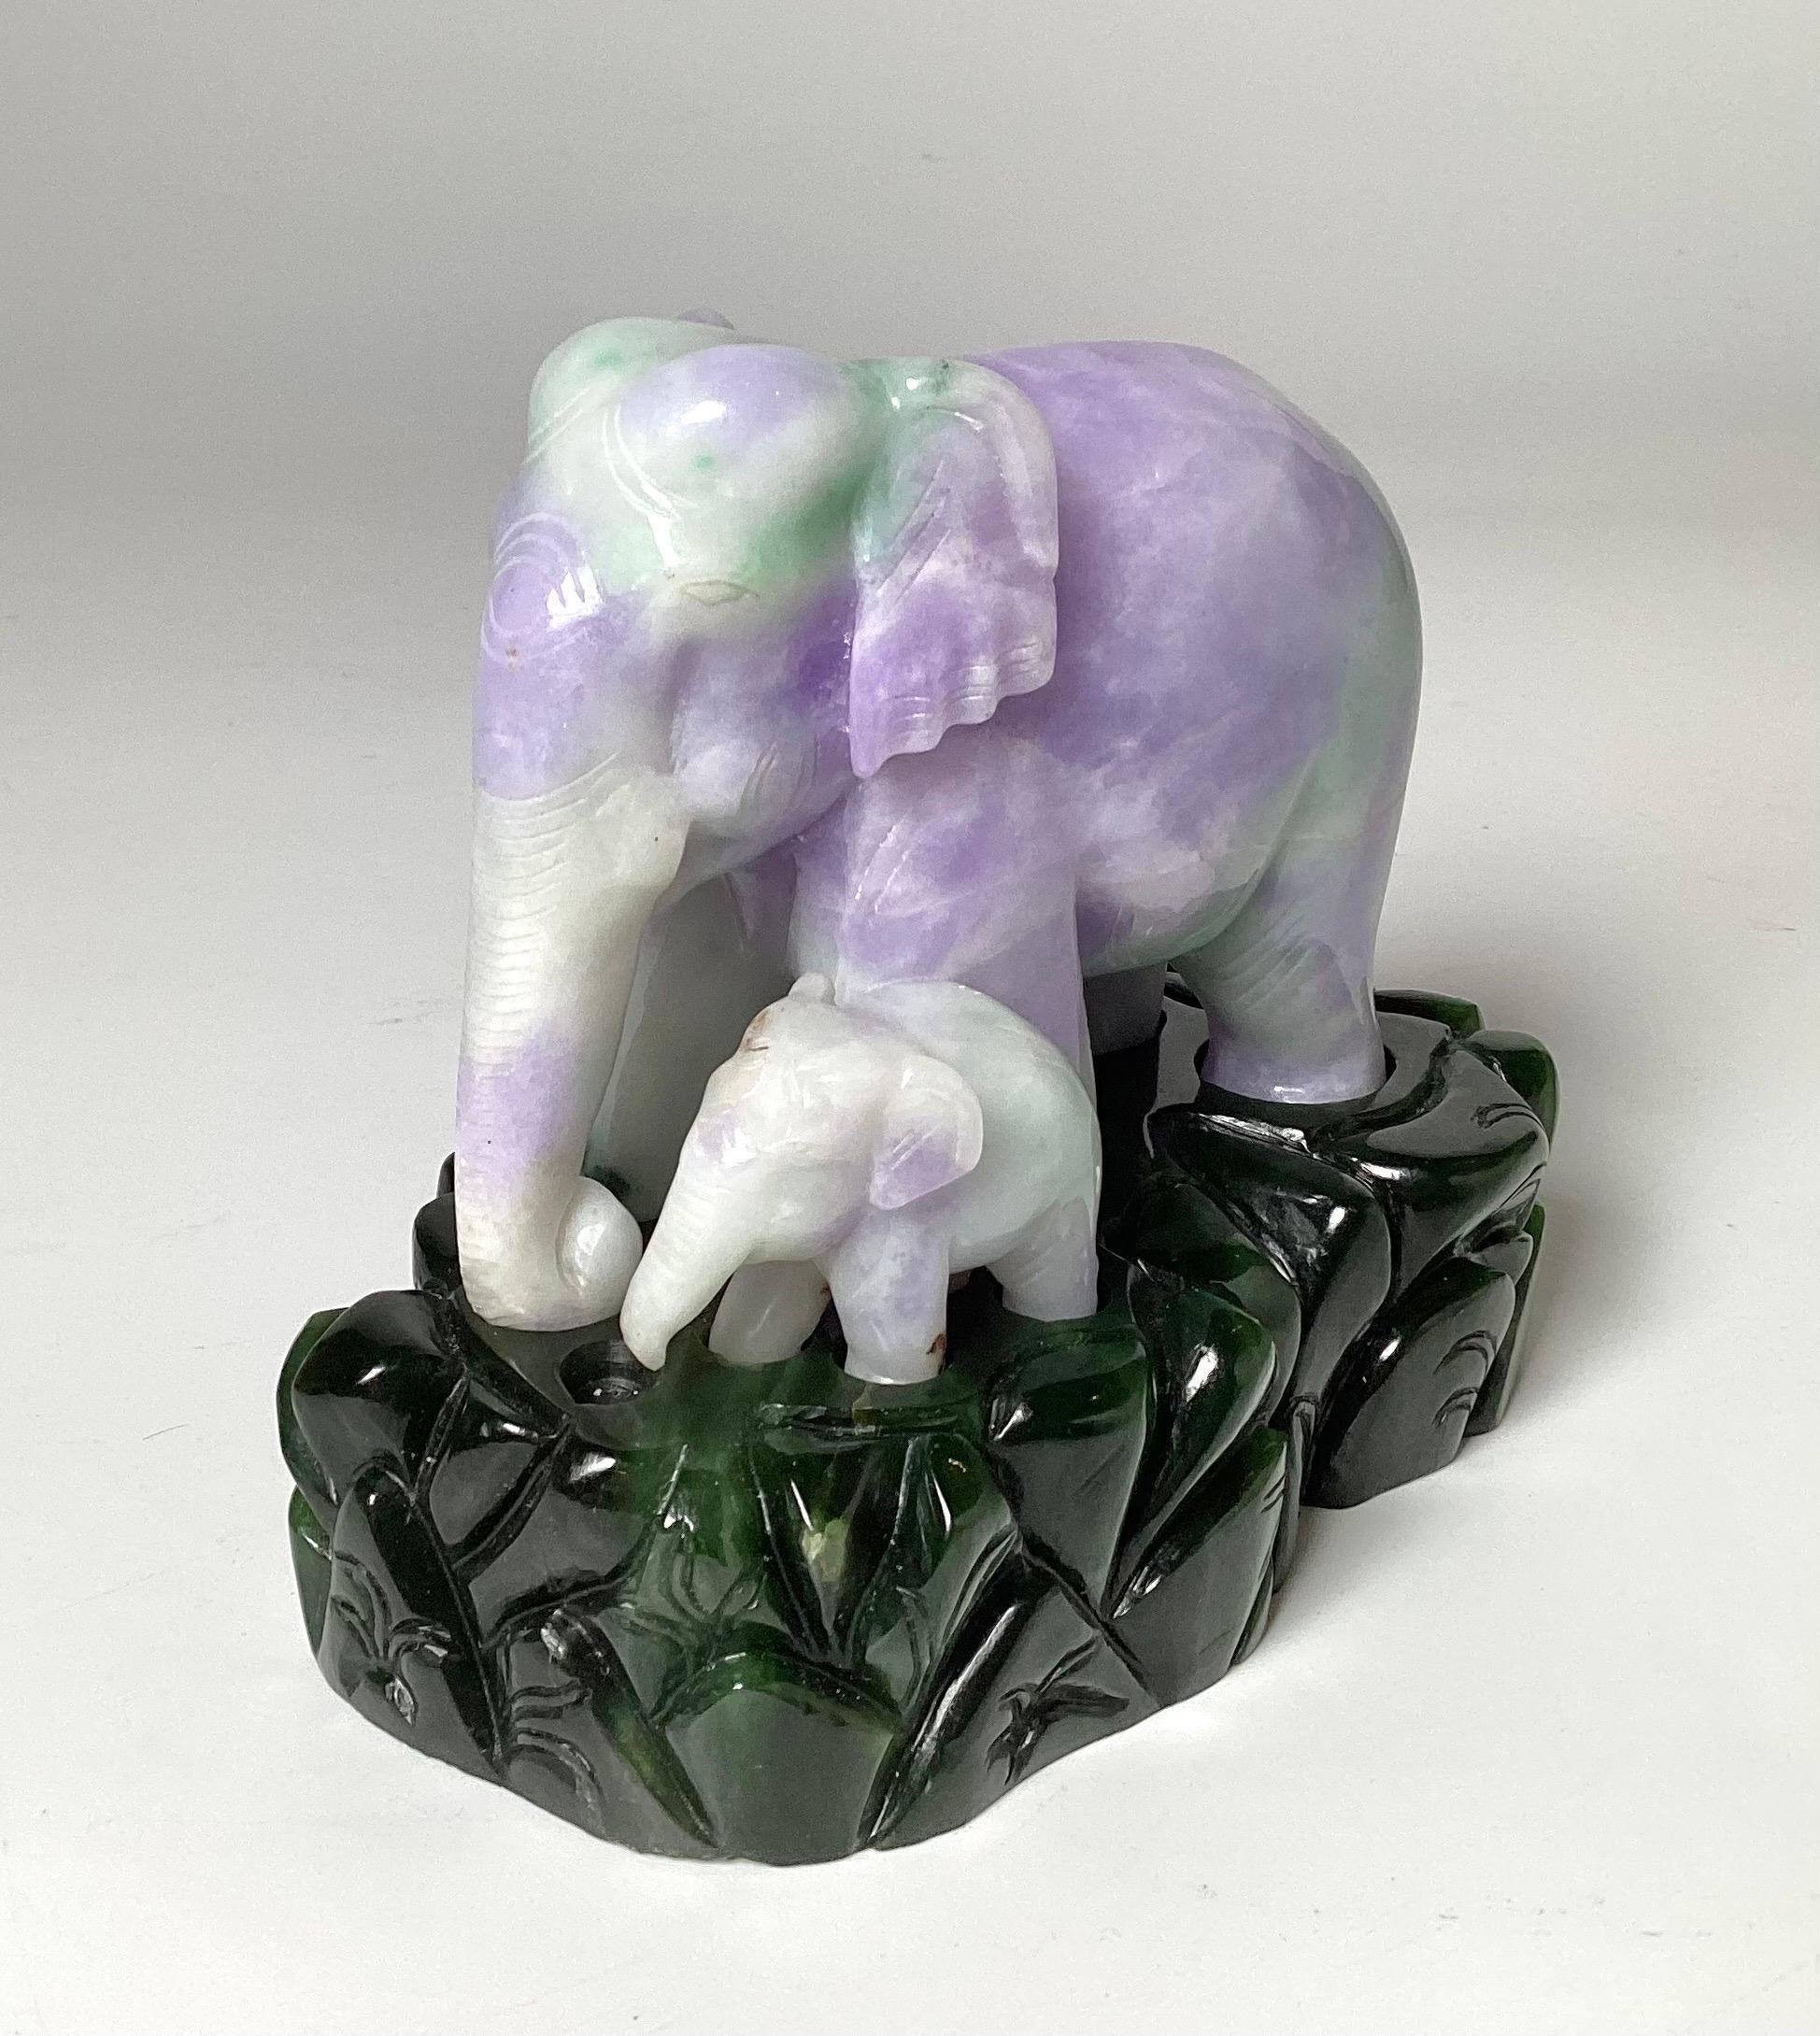 Charmant éléphant en jadéite sculpté sur une base en jade épinard. L'éléphant sculpté à la main en jade vert pomme et lavande représente une mère et son petit. Le socle vert foncé est séparé et la figurine repose dessus. 5 pouces de large, 4 pouces